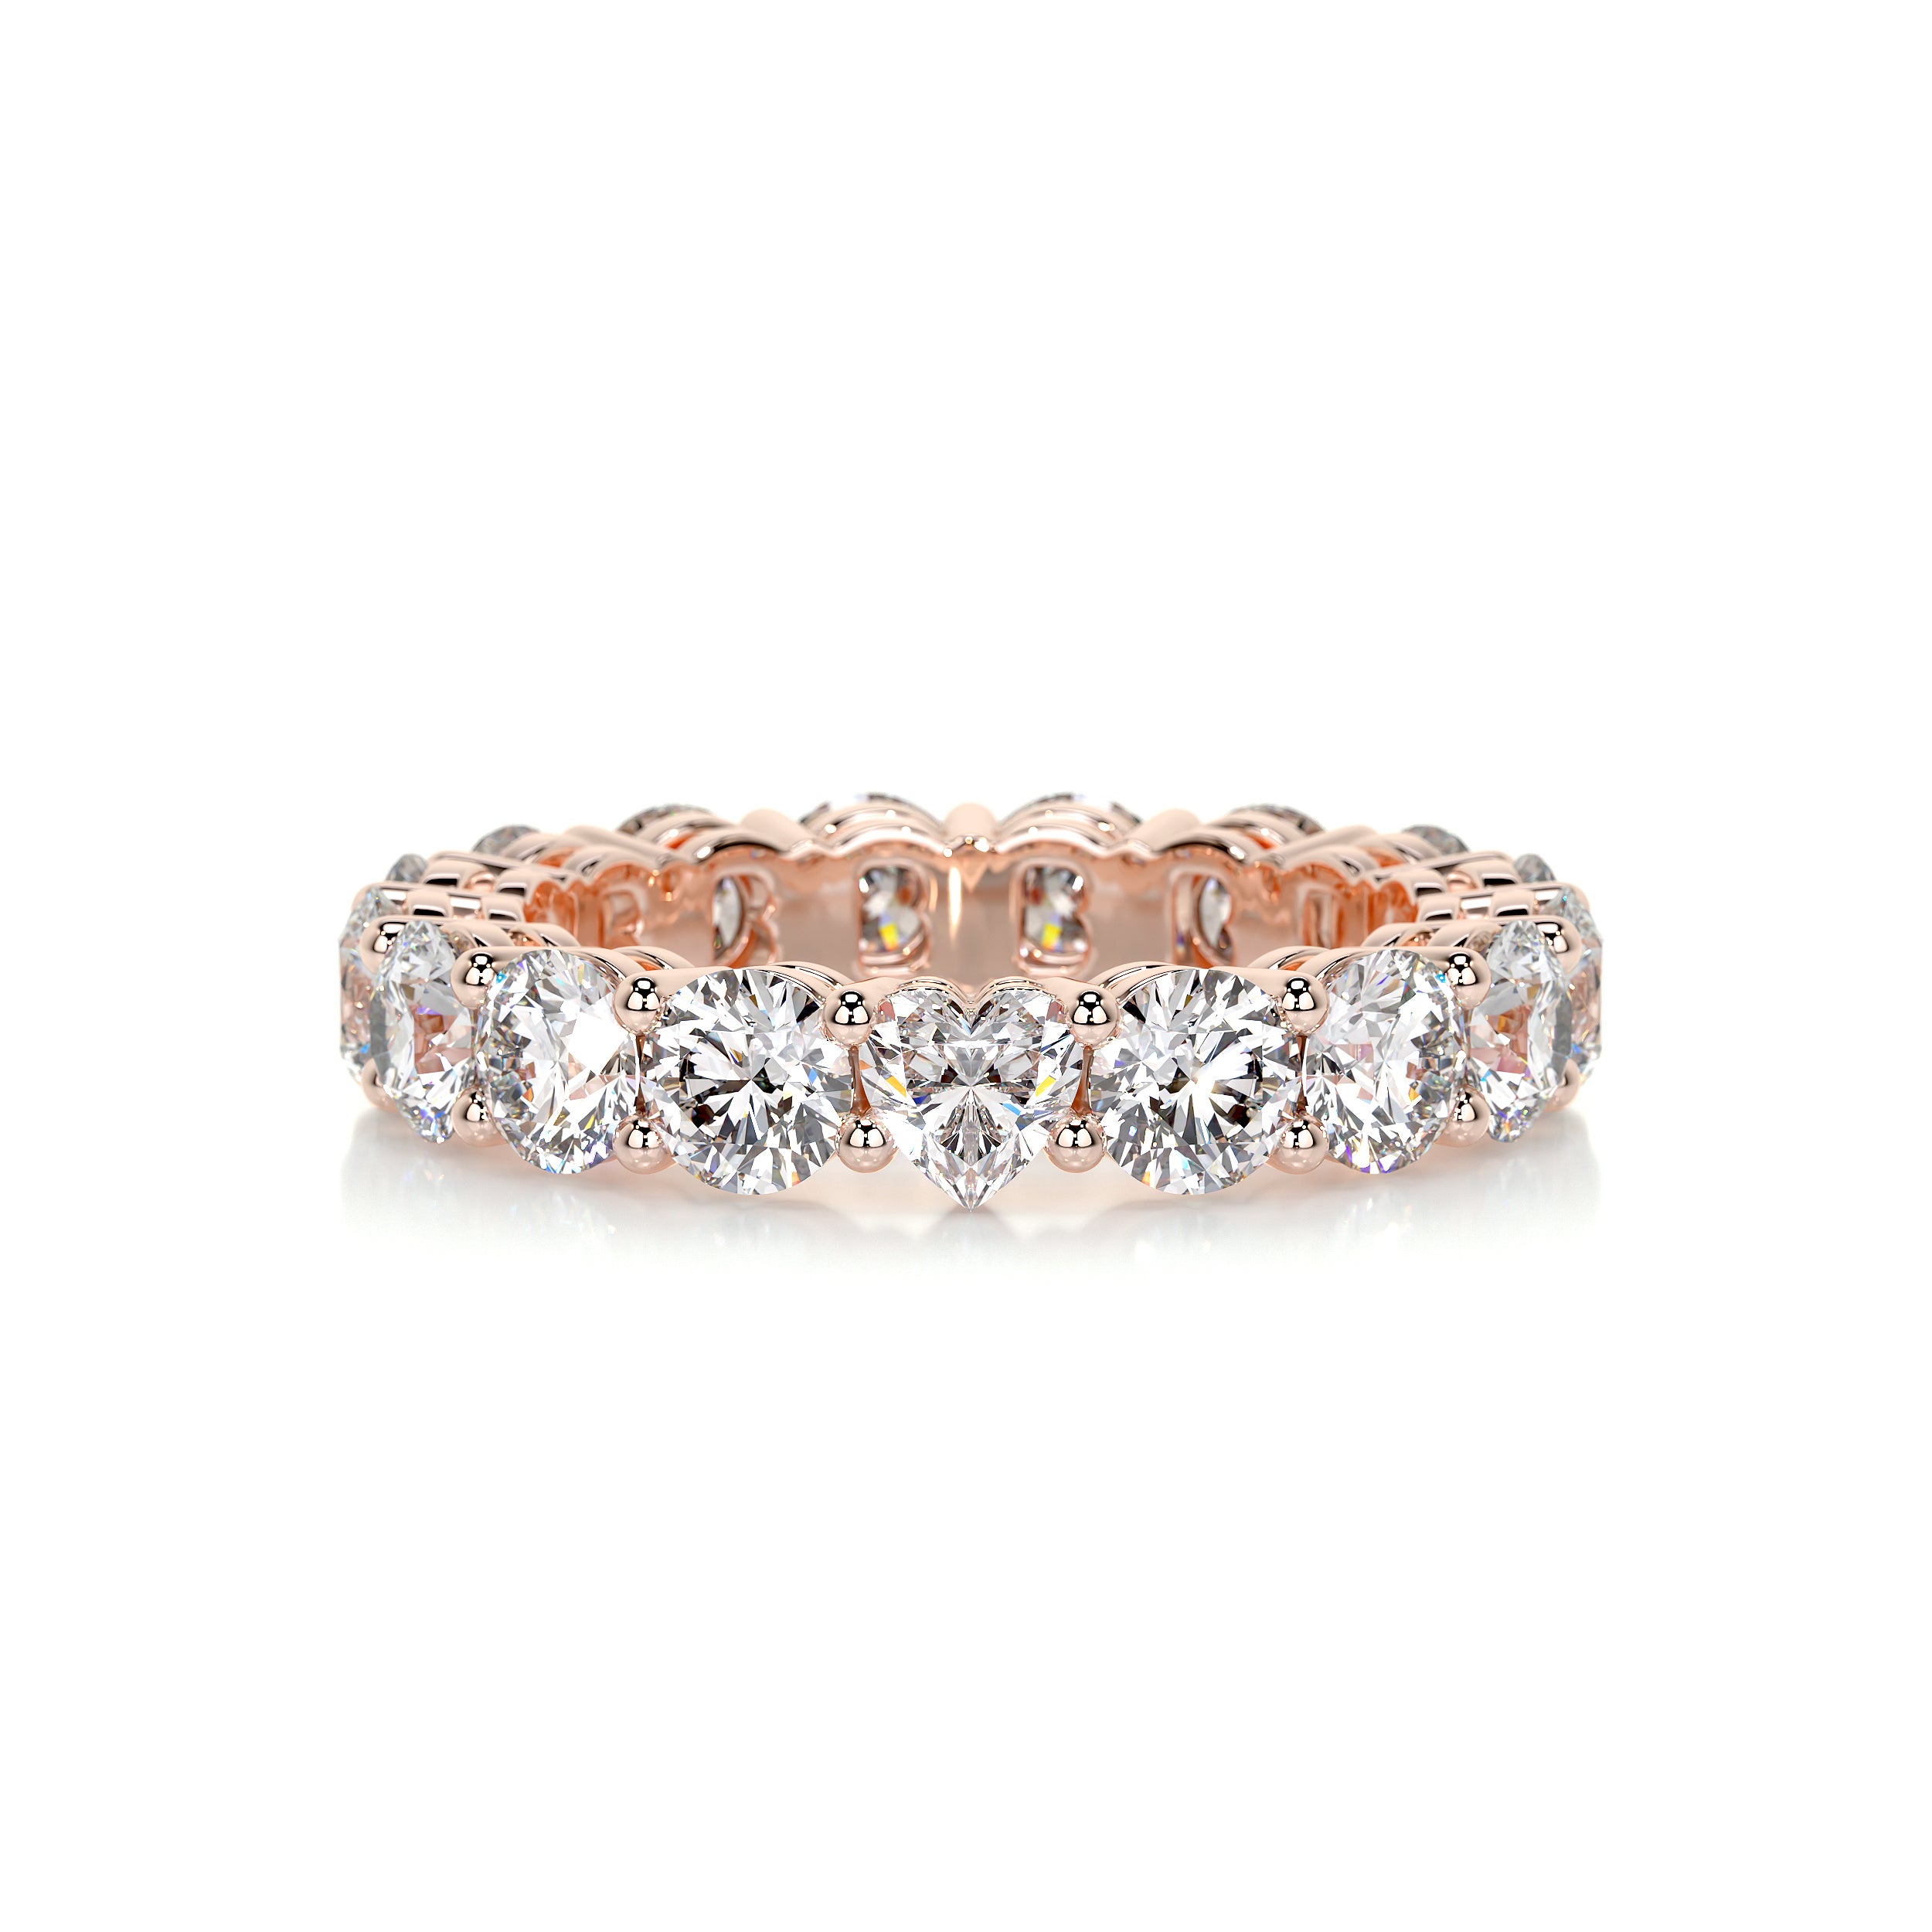 Anne Diamond Wedding Ring   (4 Carat) -14K Rose Gold